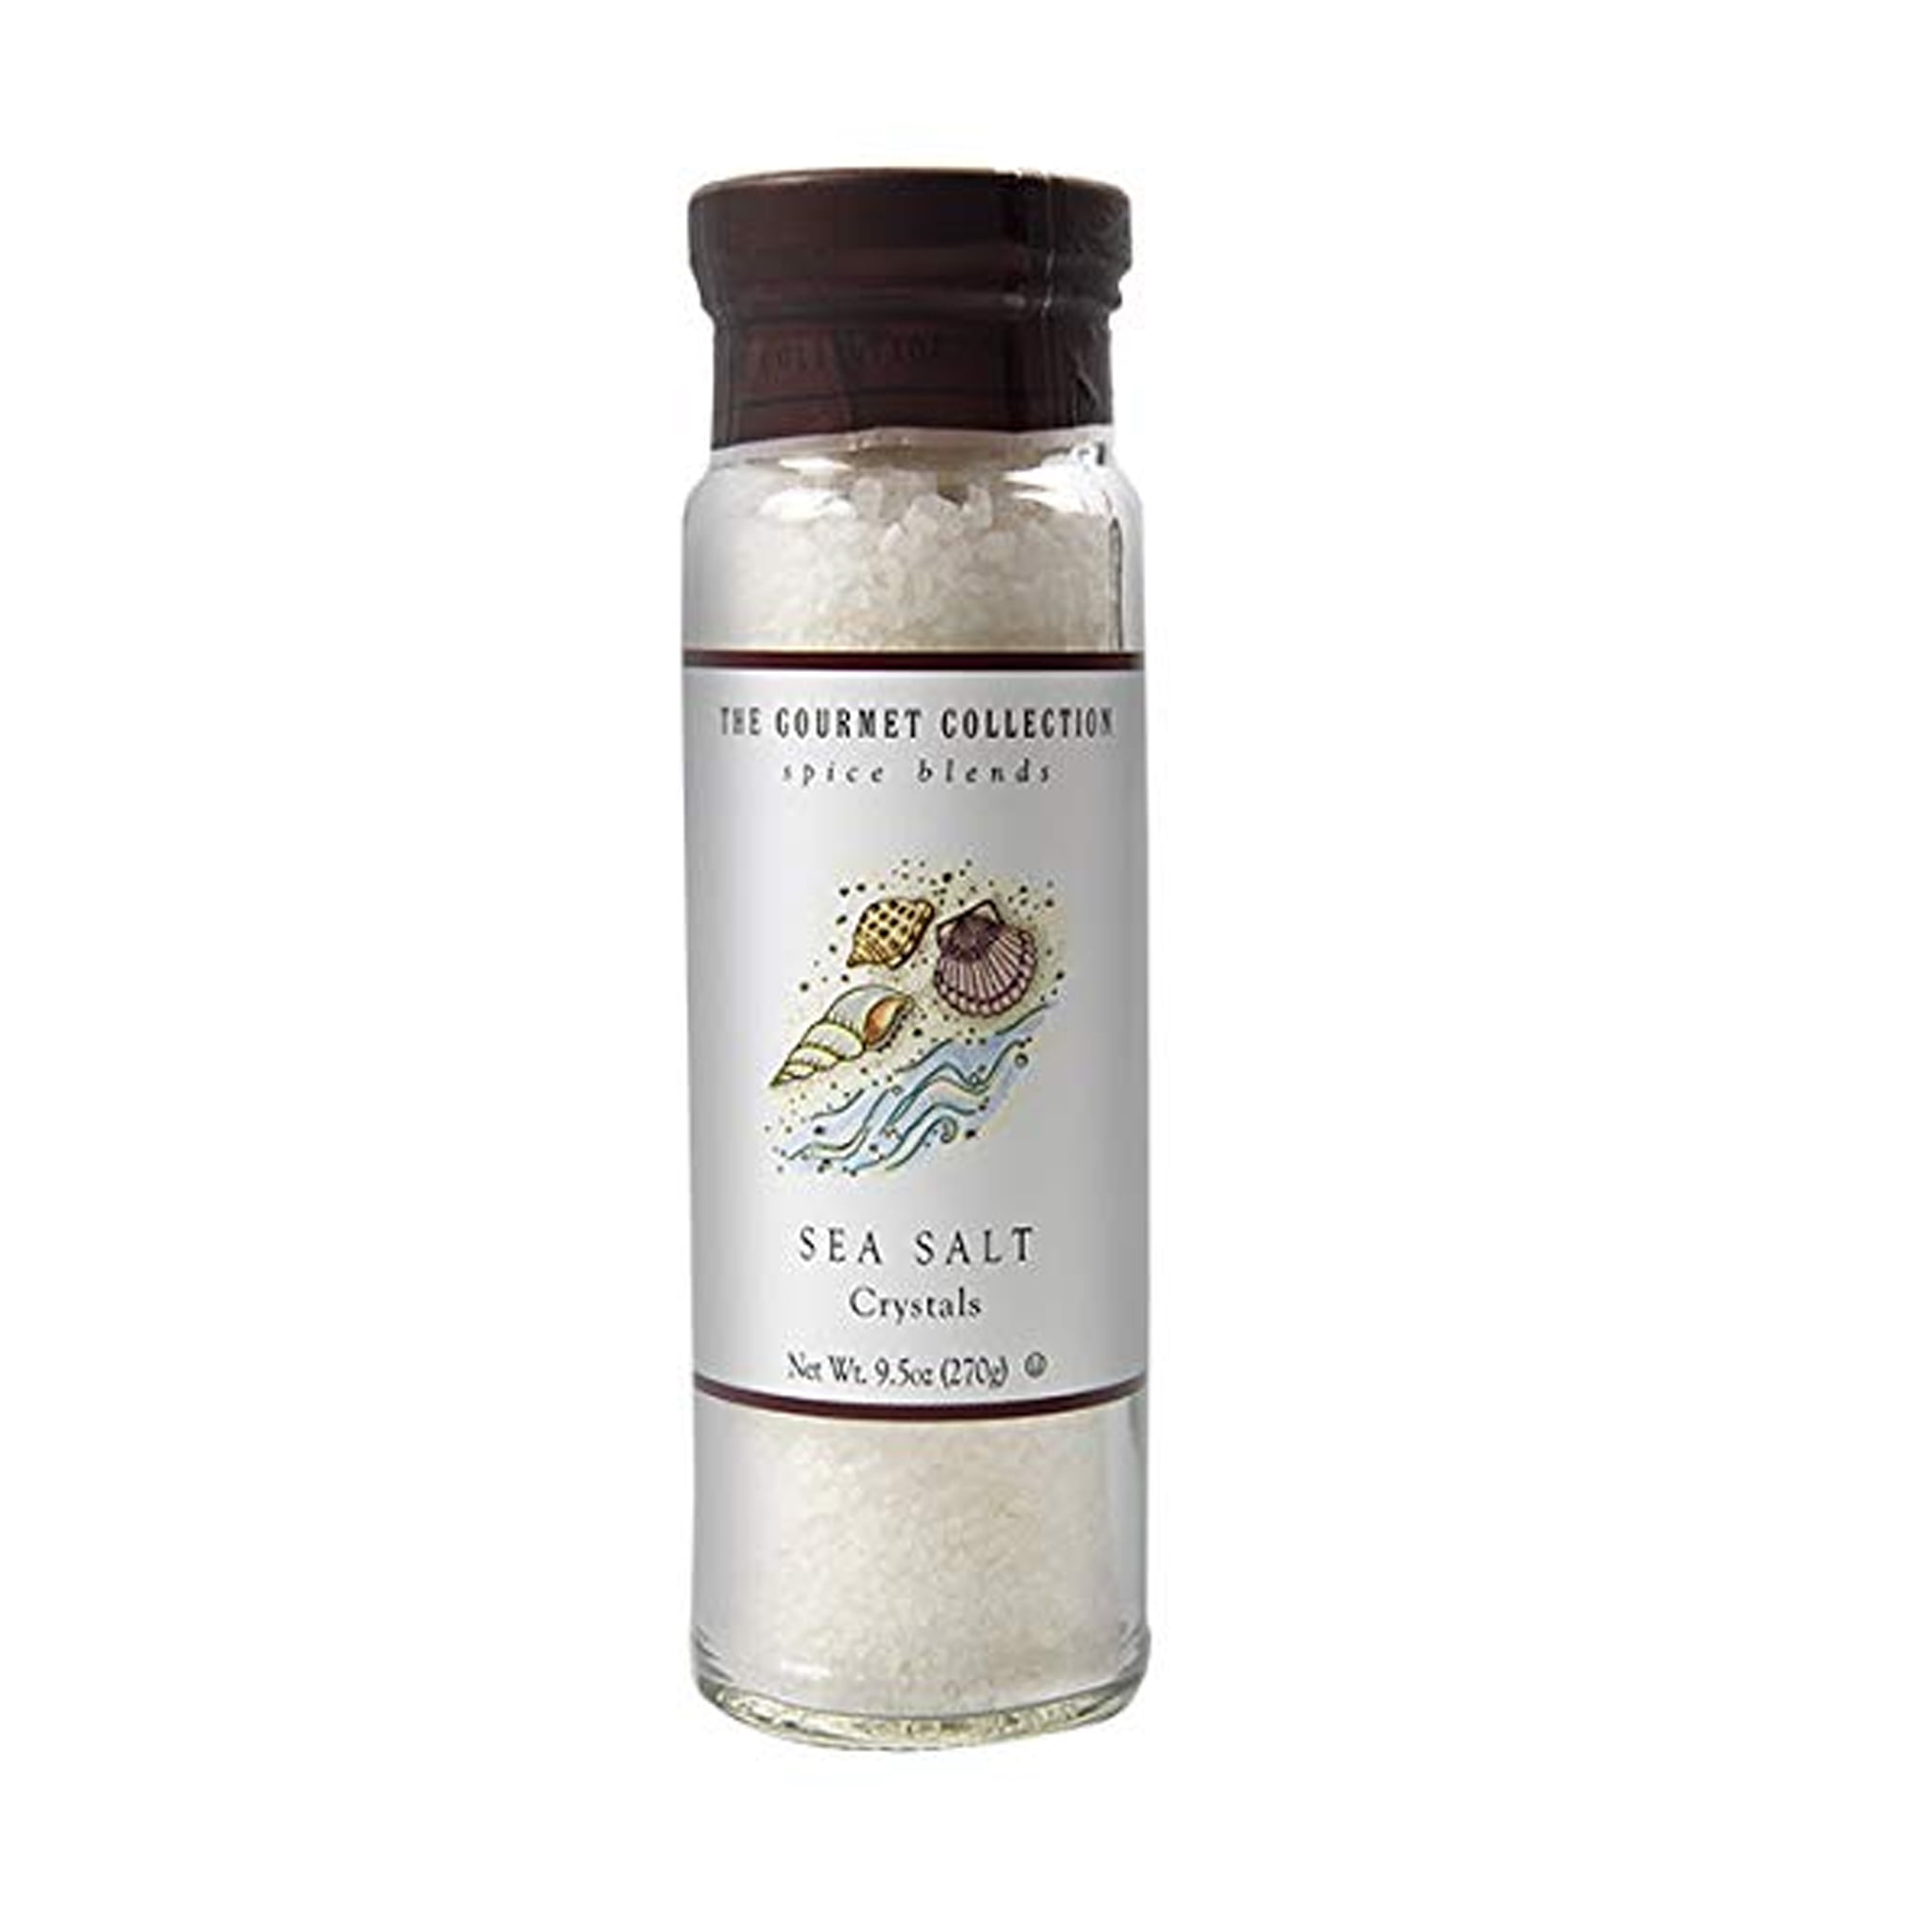 Seasoned Sea Salt Spice Blend